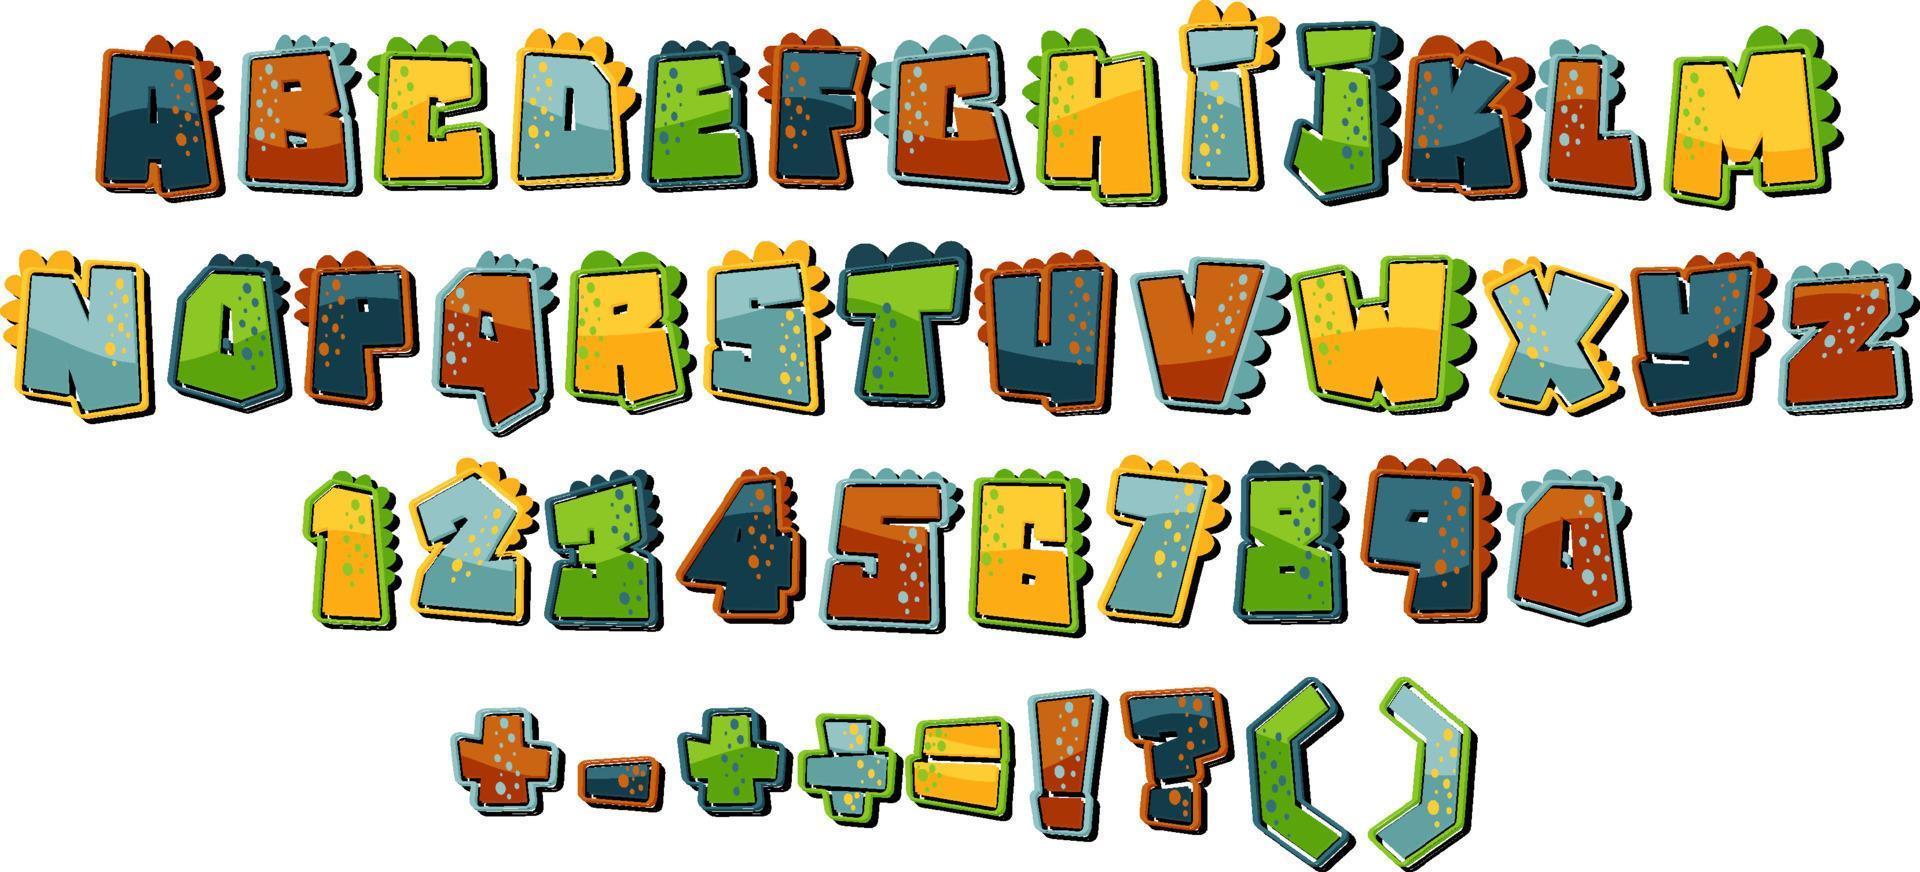 teckensnittsdesign för engelska alfabet och siffror vektor